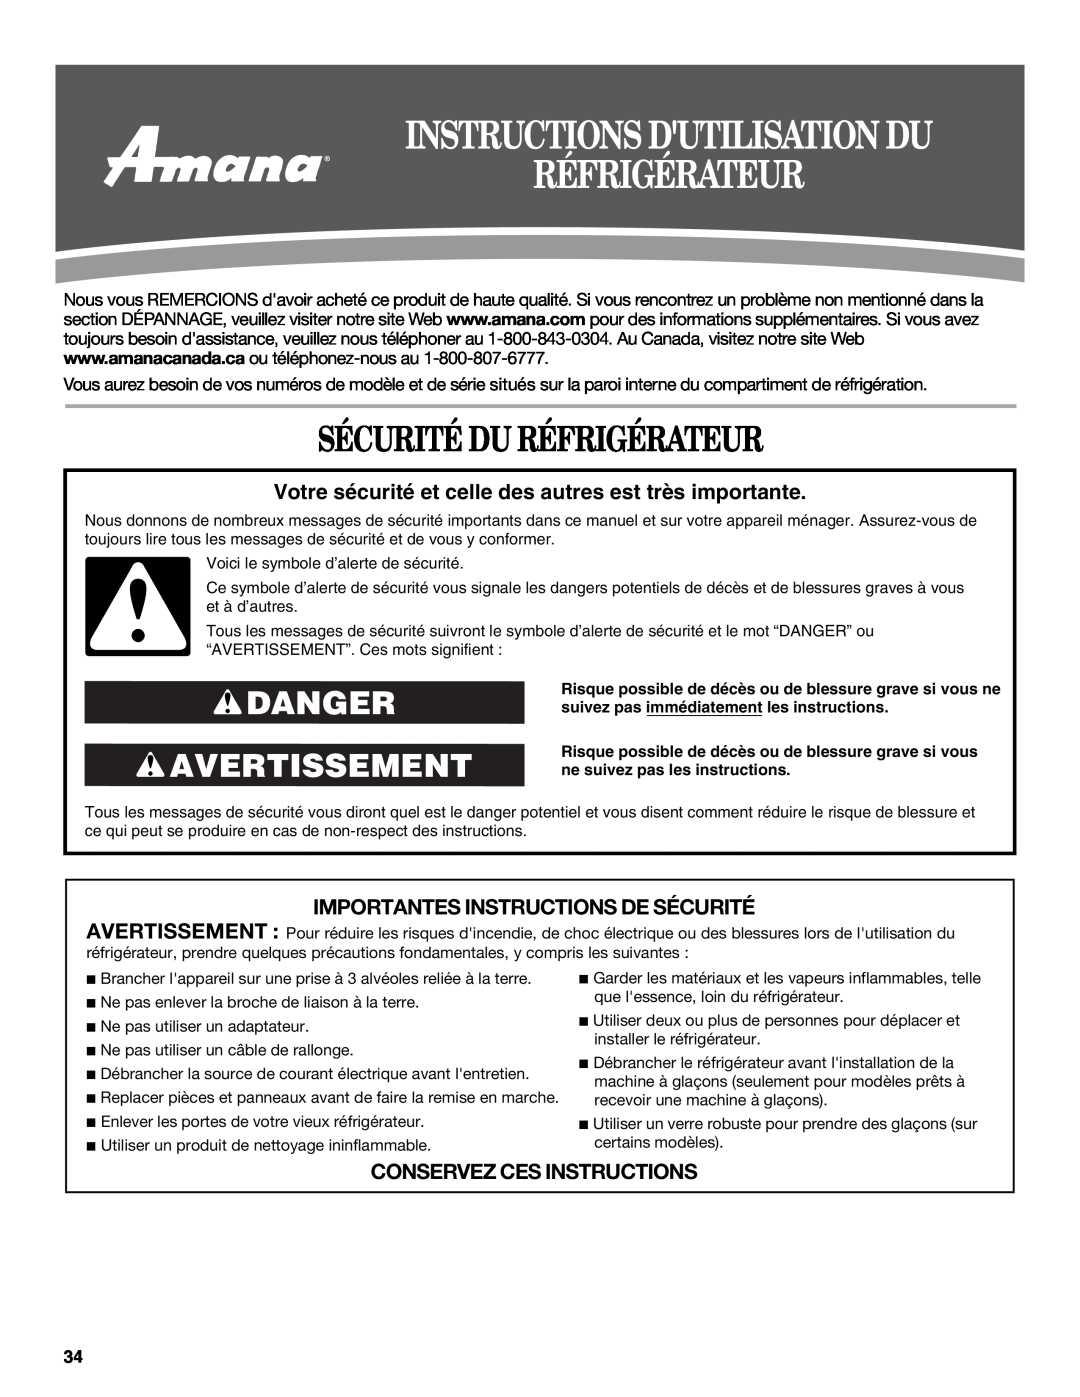 Amana W10237708A, W10237701A Instructions Dutilisation Du Réfrigérateur, Sécurité Du Réfrigérateur, Danger Avertissement 